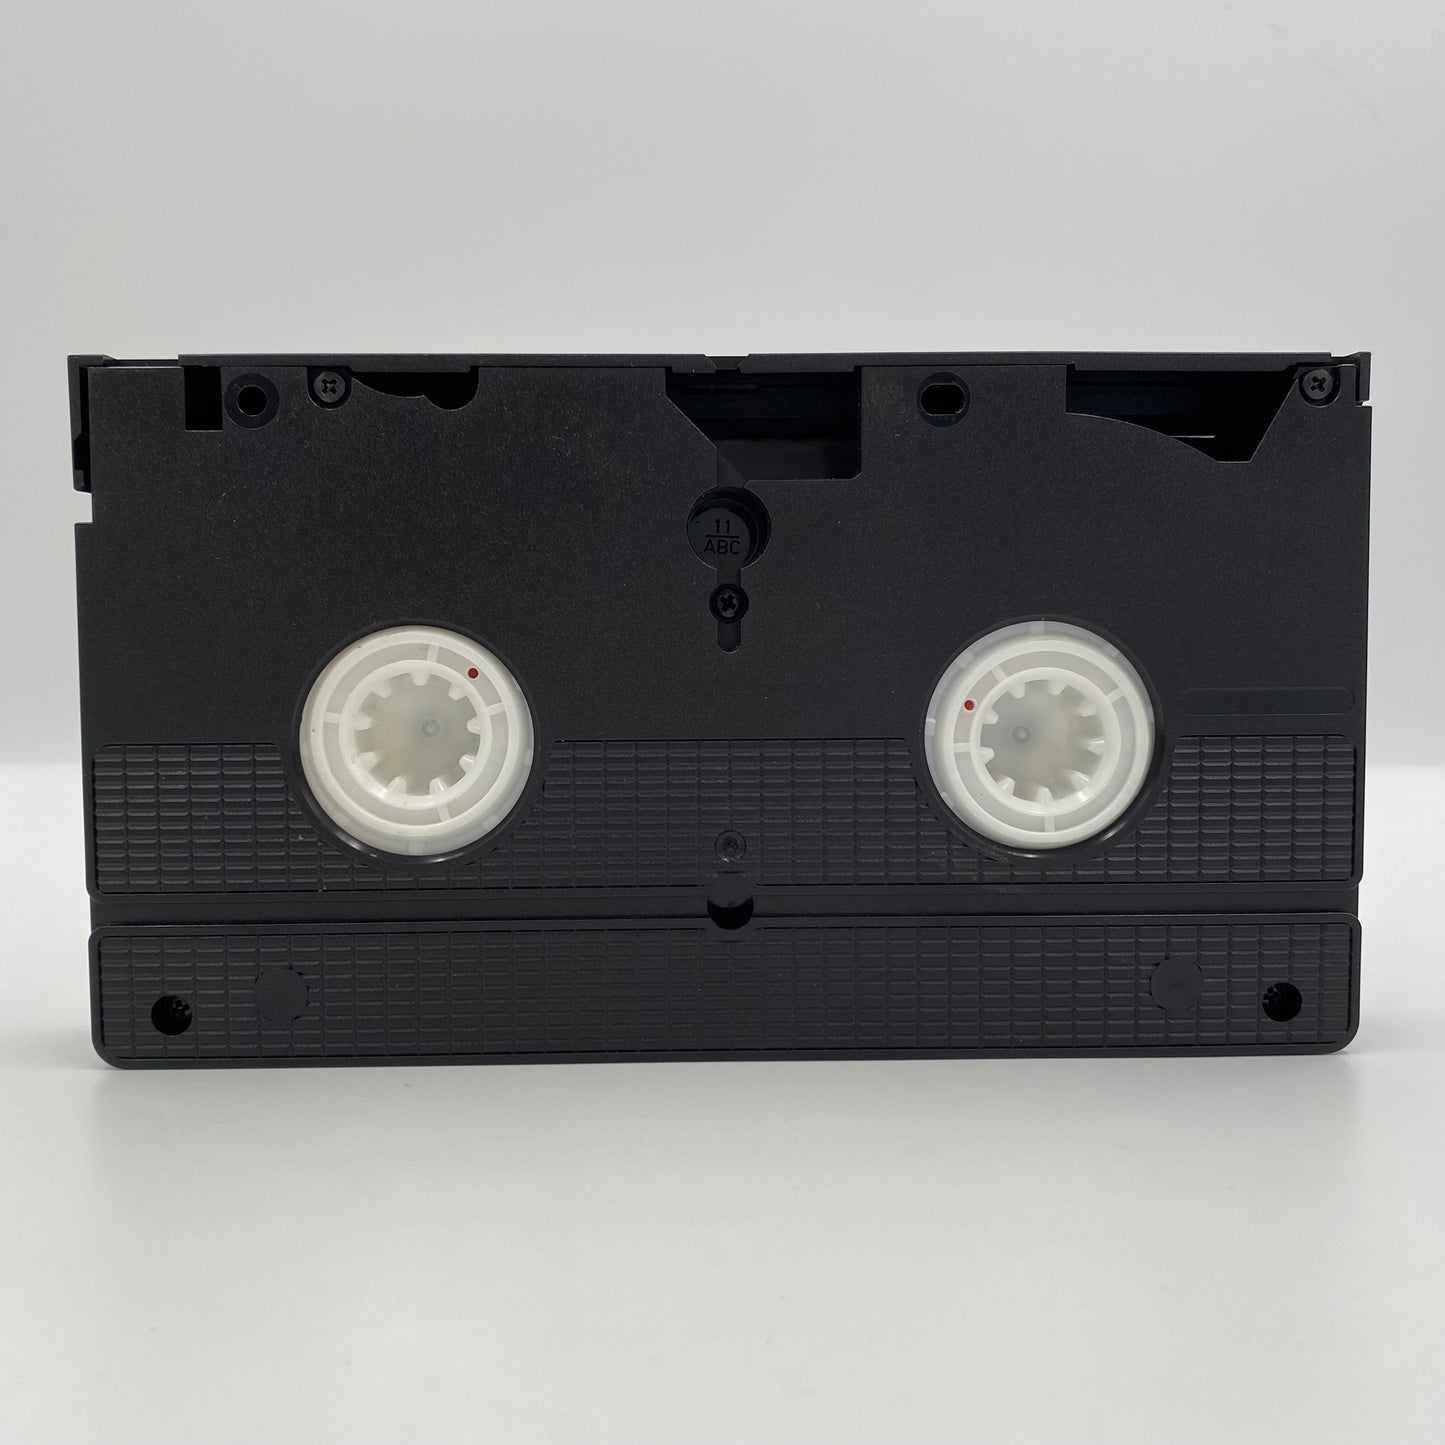 Beetlejuice VHS tape (1991) Warner Home Video